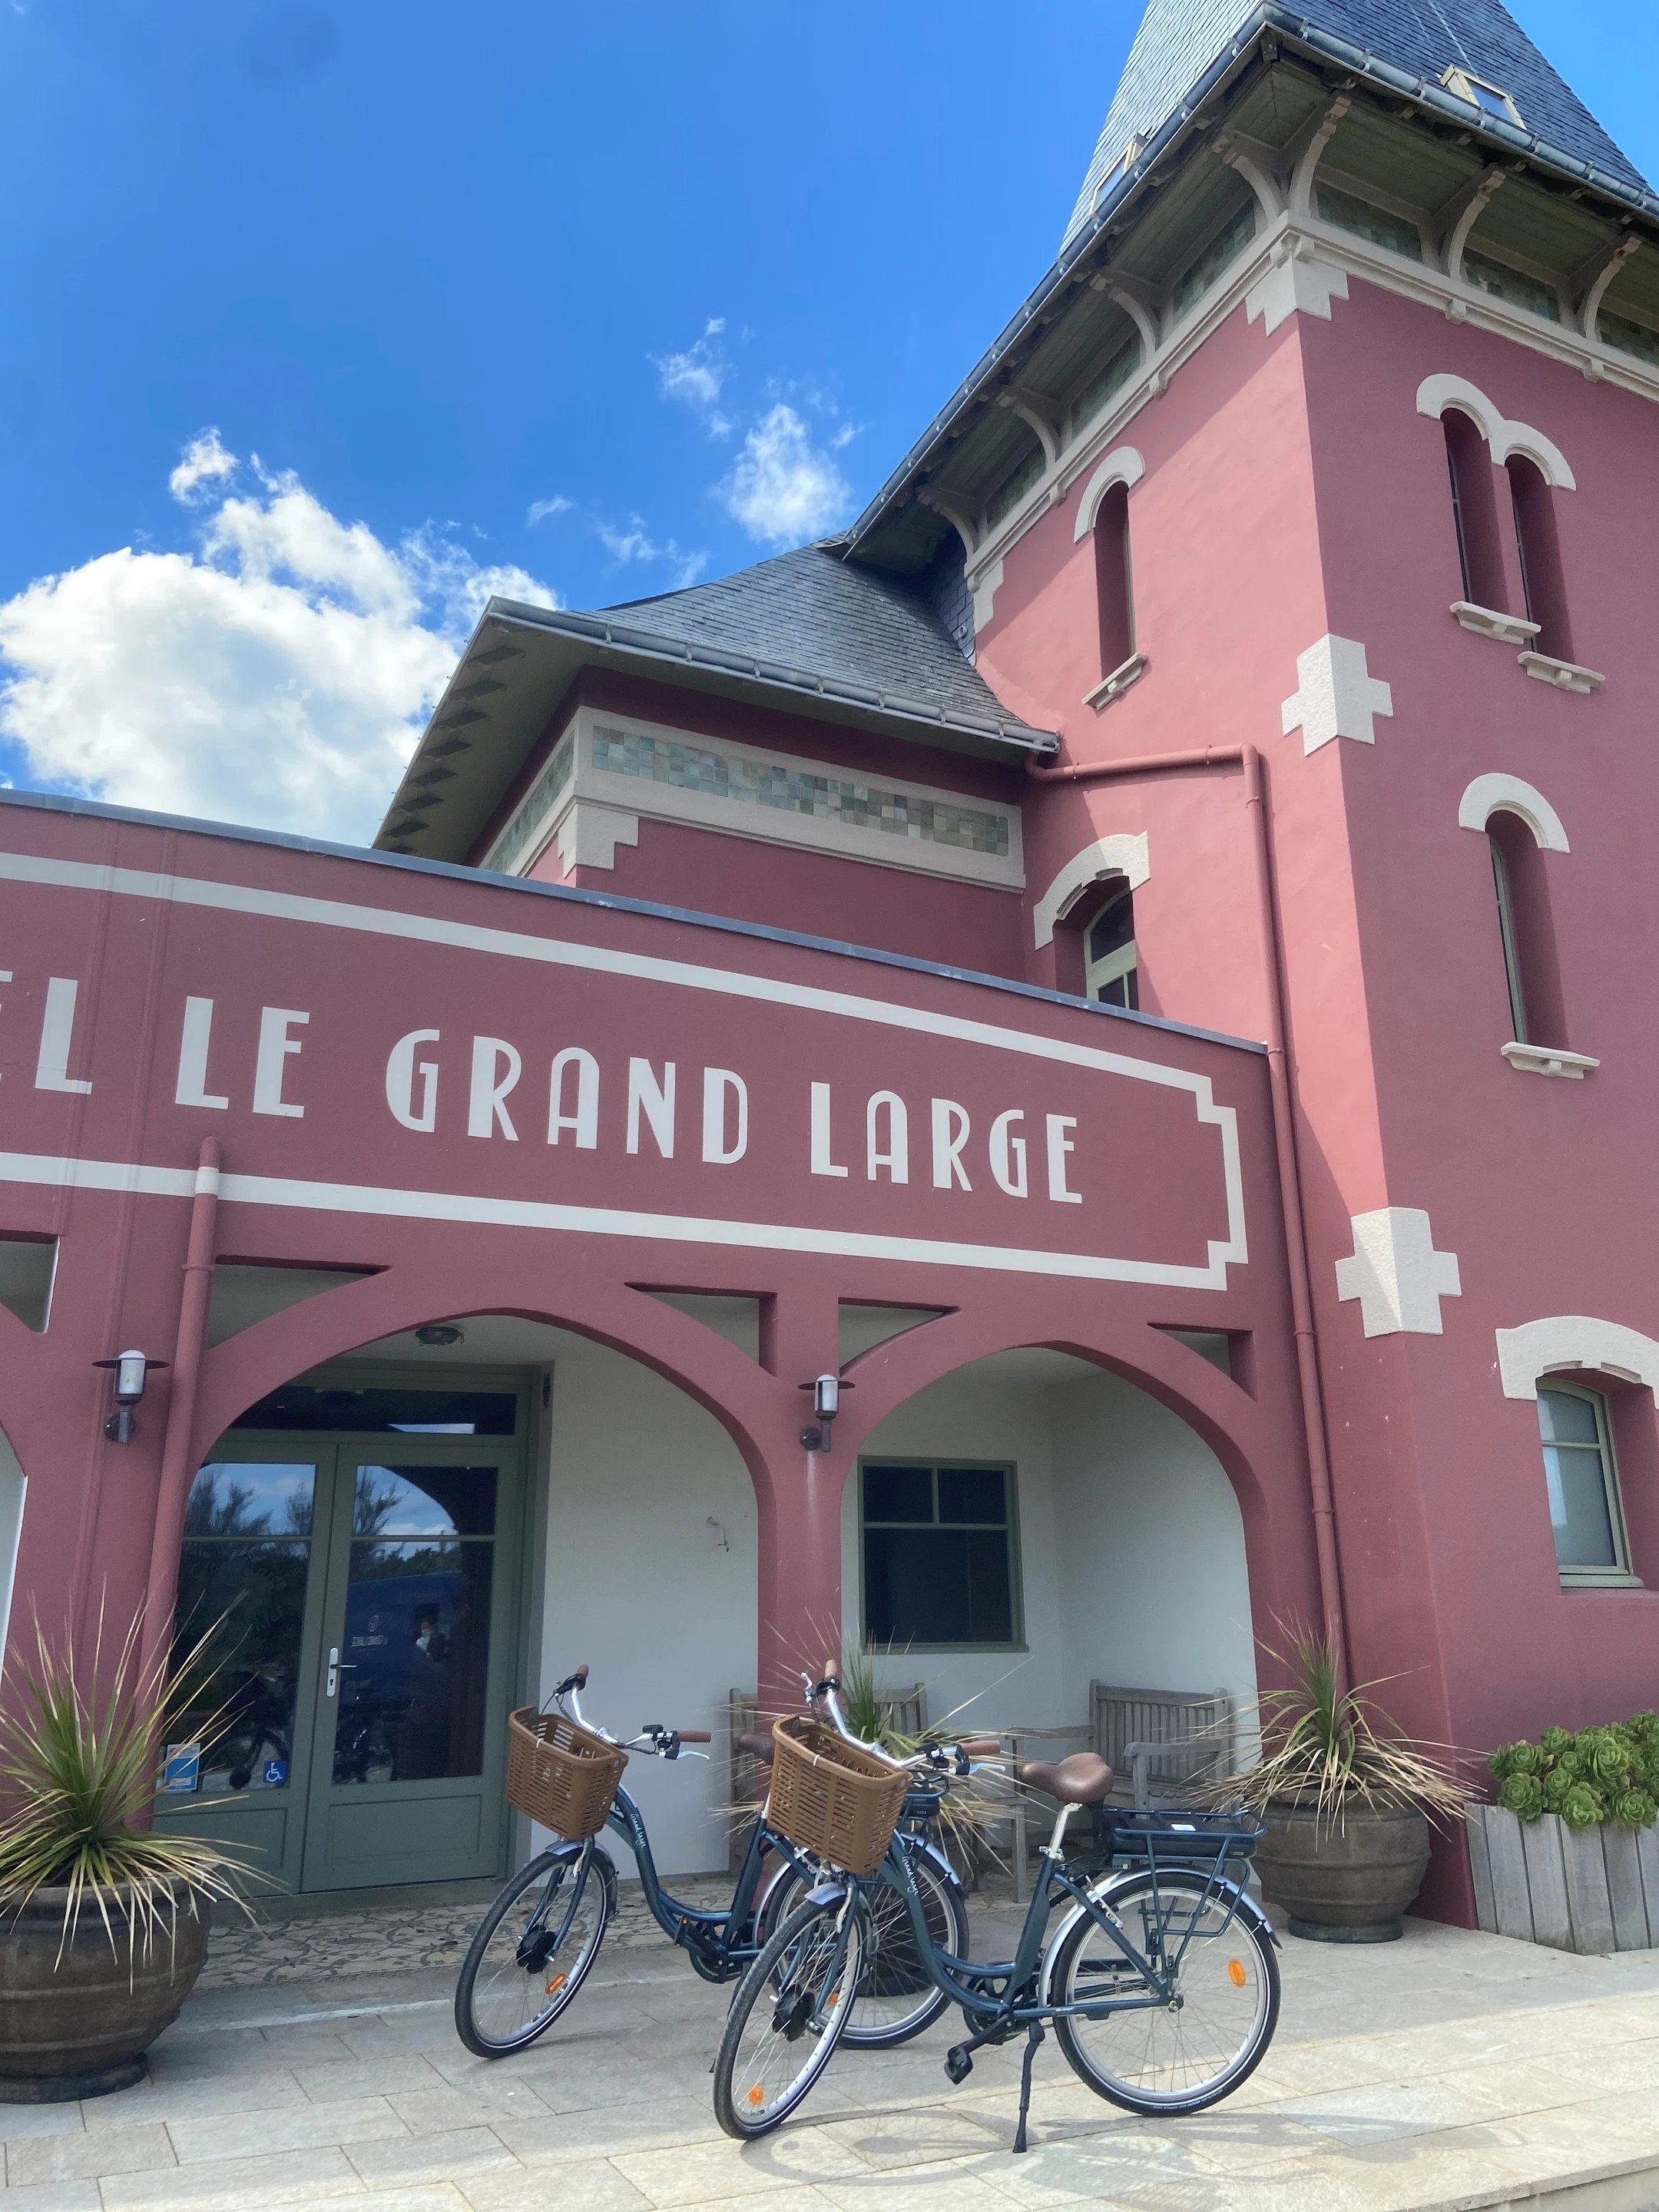 Hôtel Le Grand Large location de vélo